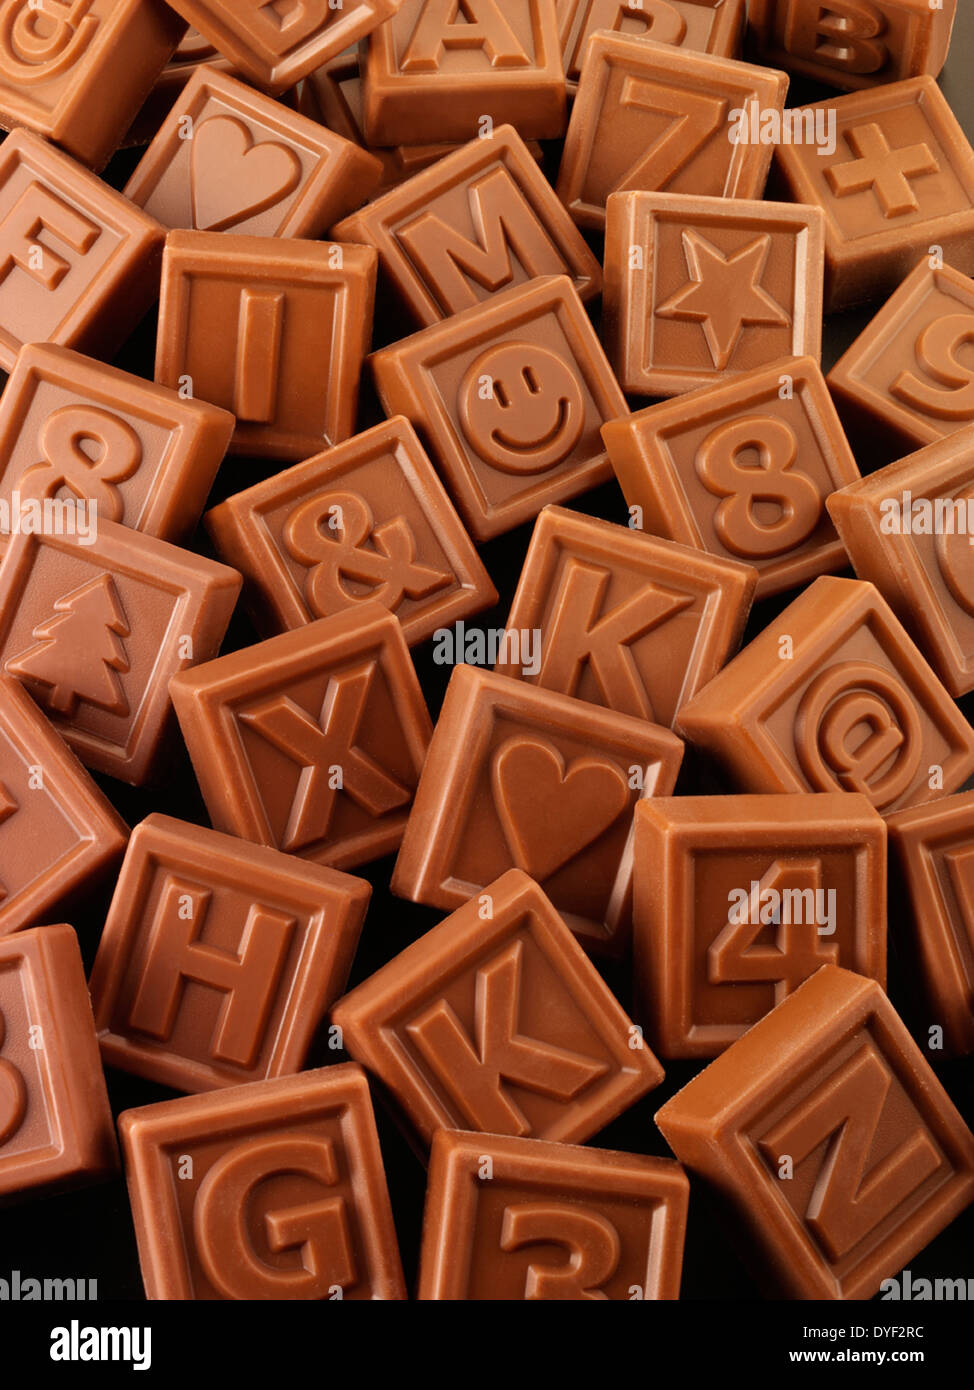 Un assortimento di quadrati di cioccolato al latte con le lettere, i numeri e le forme Foto Stock